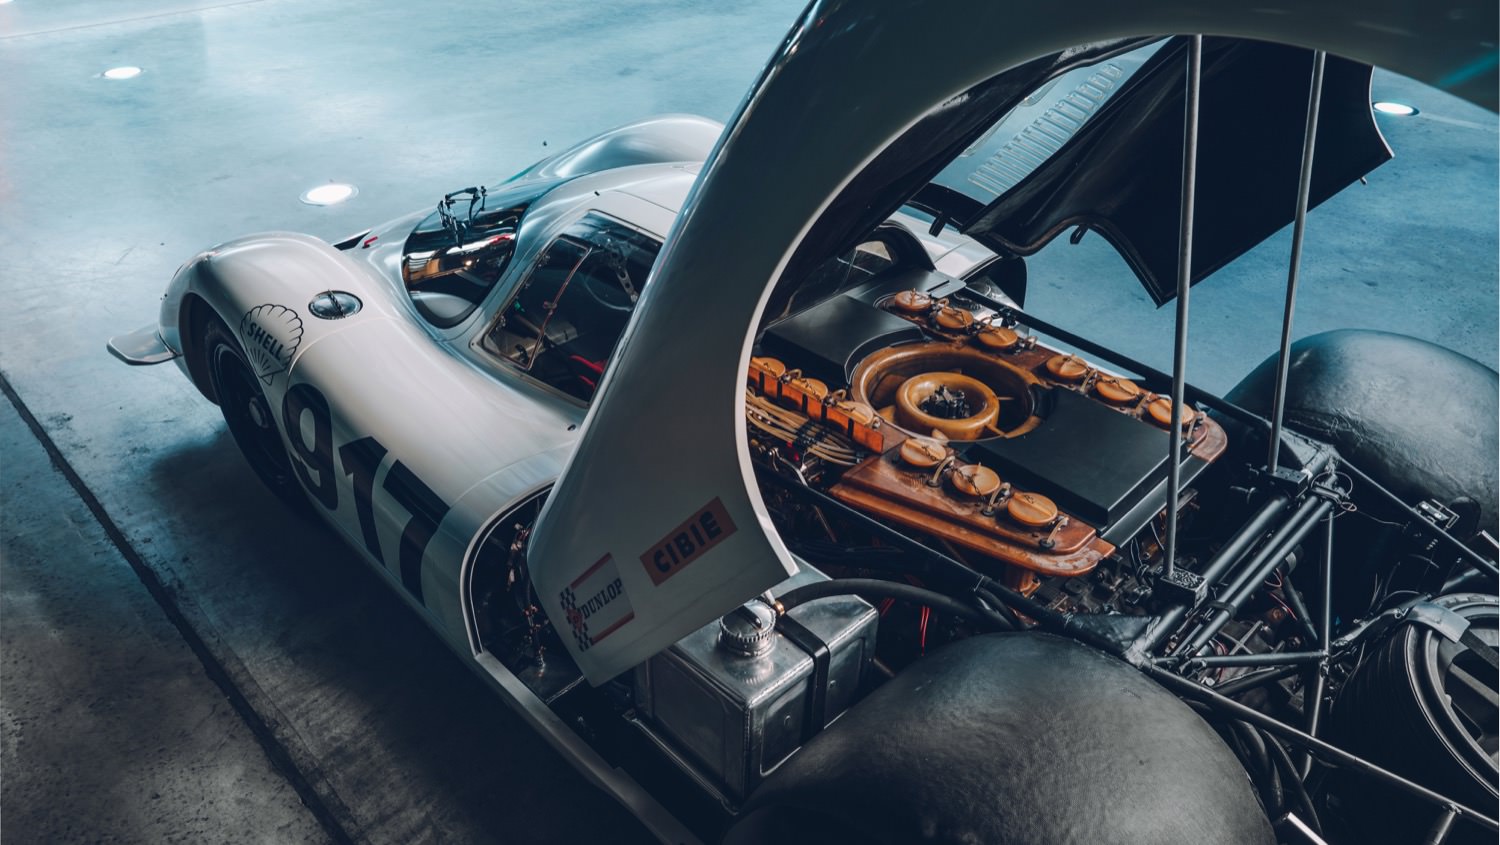 Porsche 917 engine bay